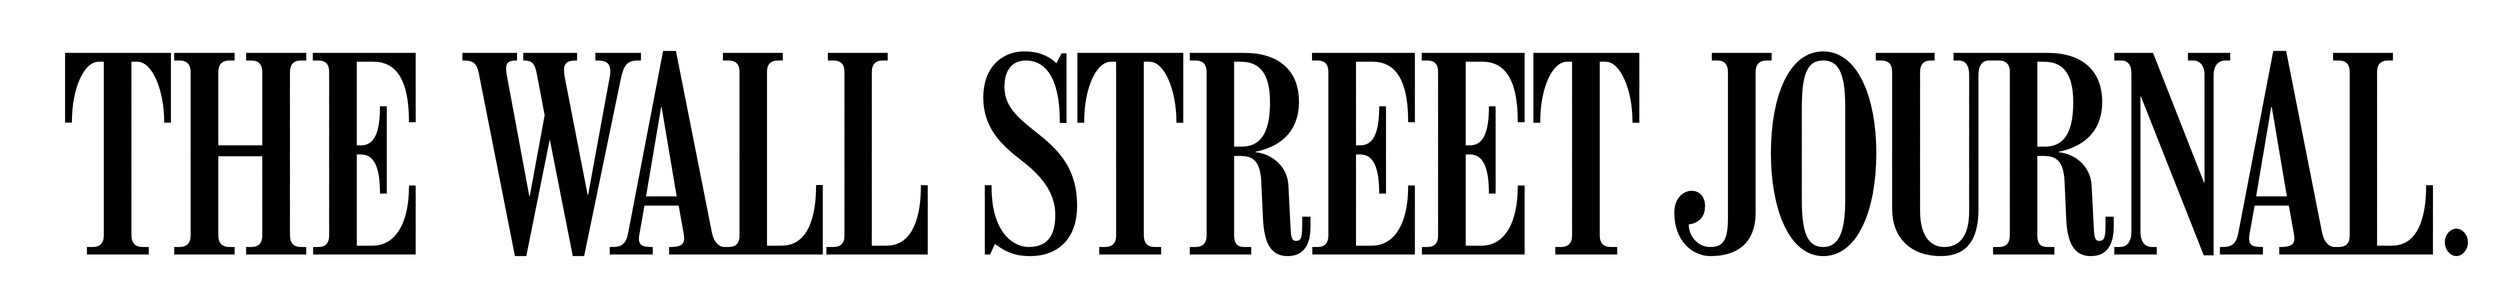 WSJ Logo.png